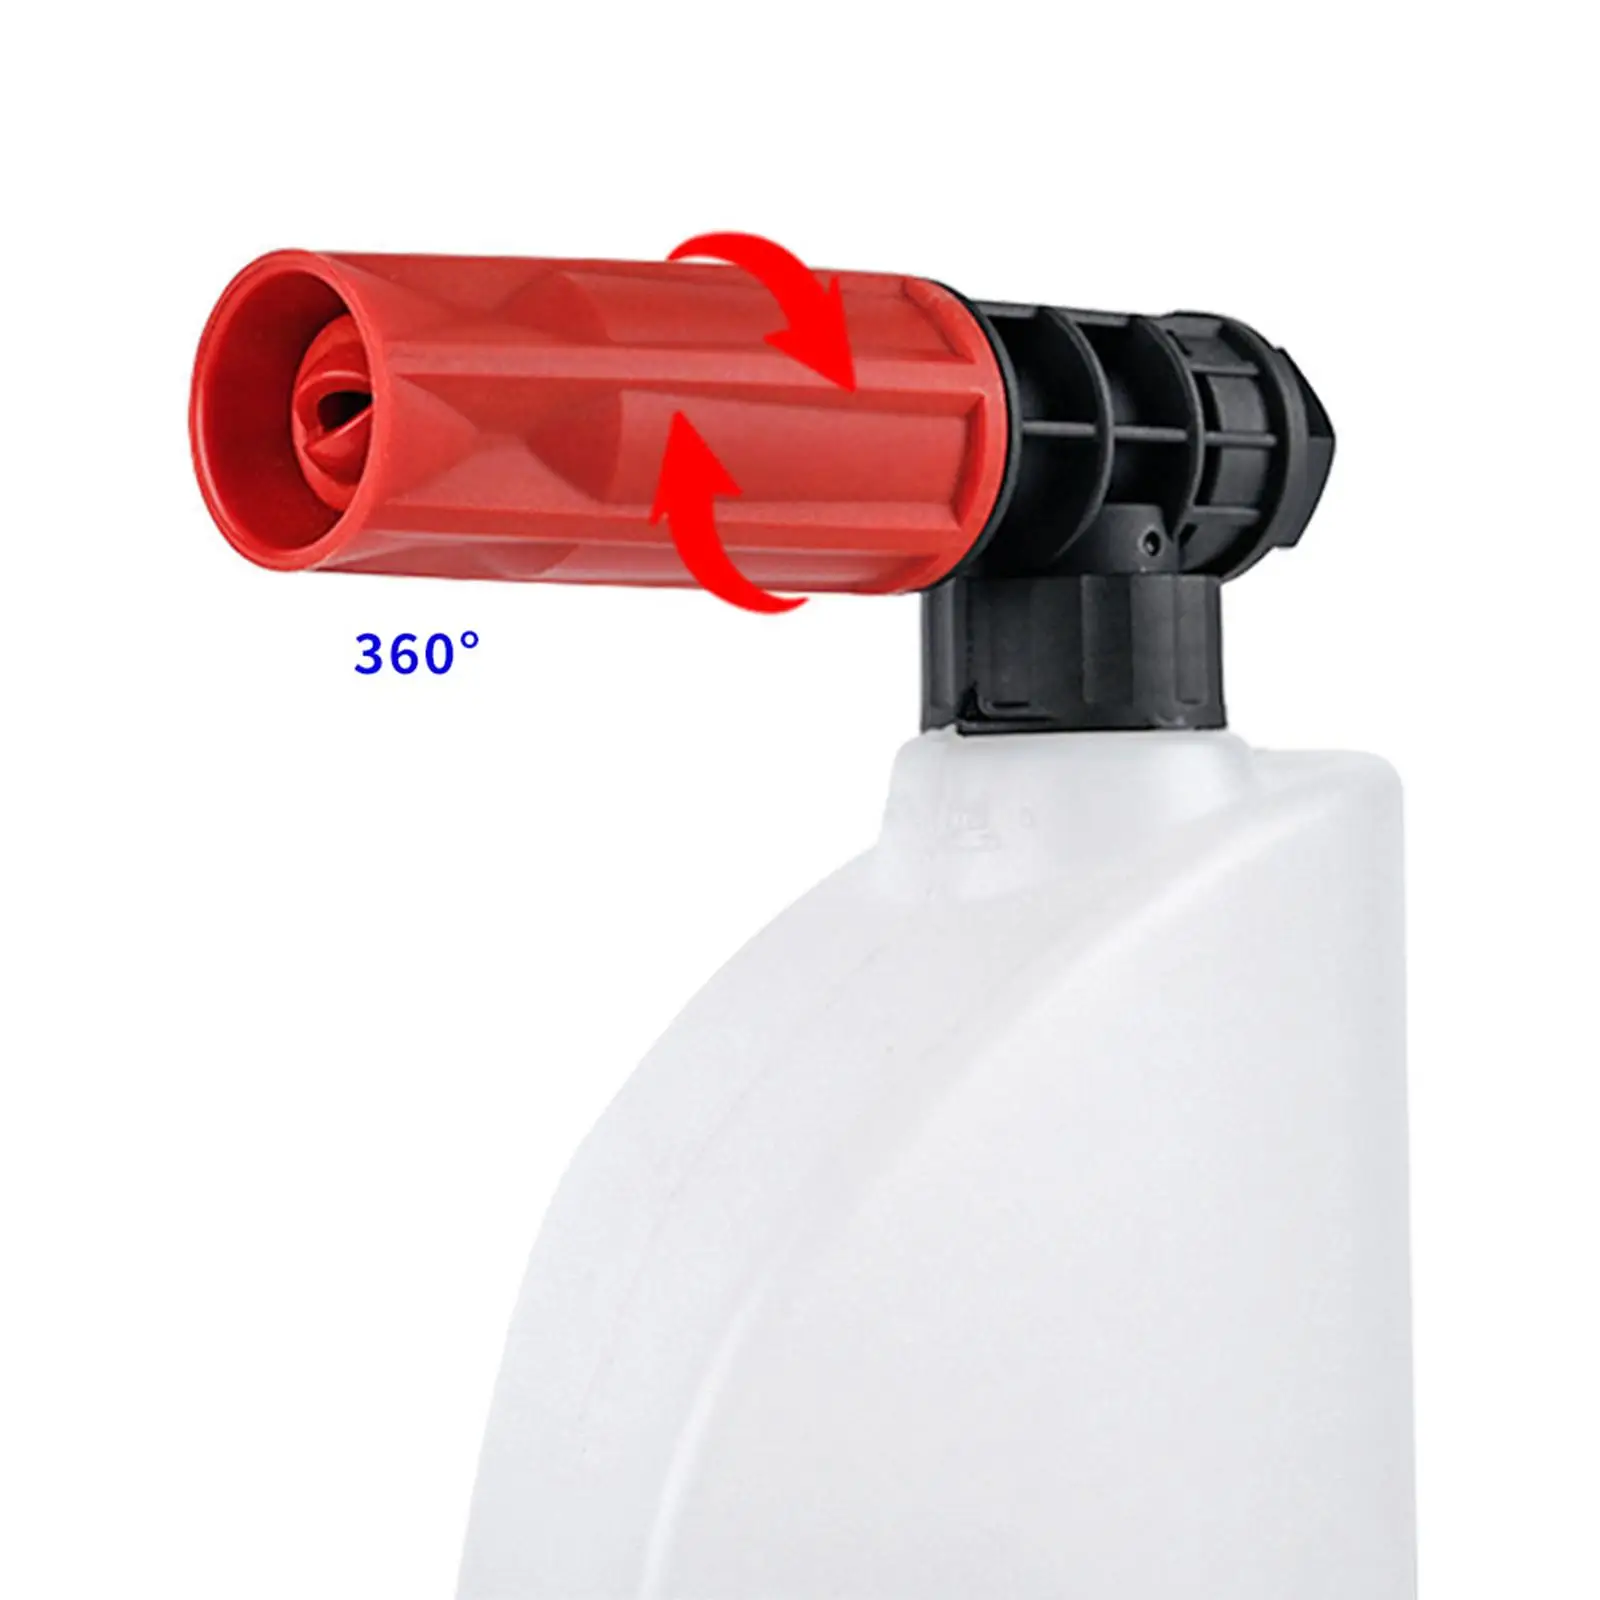 Car Wash Foam Pressure Sprayer 0.6L Car Wash Sprayer Handheld Foaming Sprayer for cars cleaning yard Cleaning Car Washing